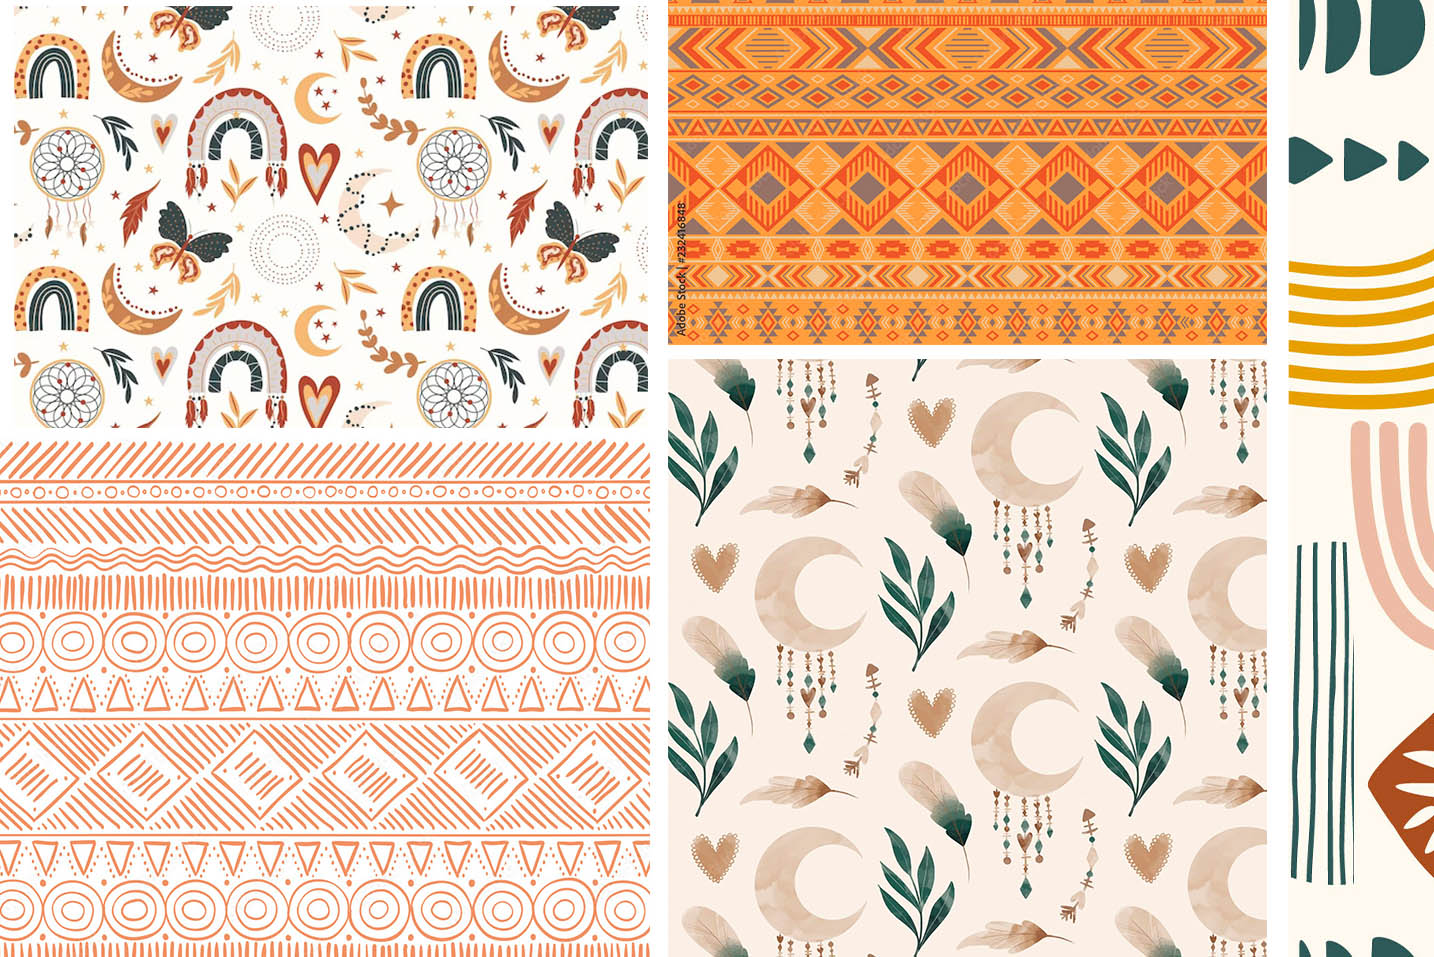 boho motifs and patterns